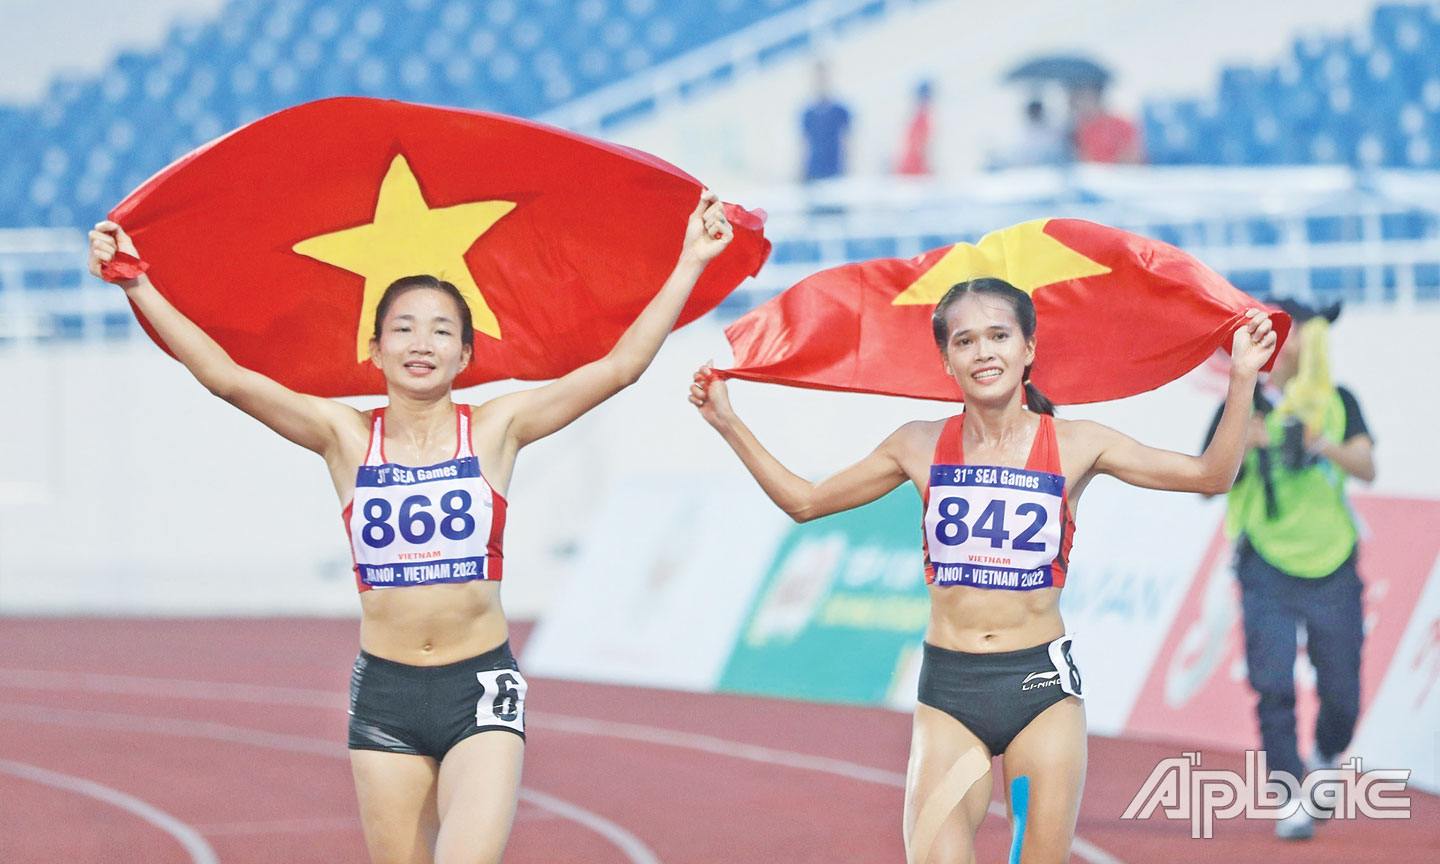 VĐV Nguyễn Thị Oanh (bên trái) đoạt cú đúp HCV ở nội dung 1.500 m và 5.000 m bộ môn Điền kinh.